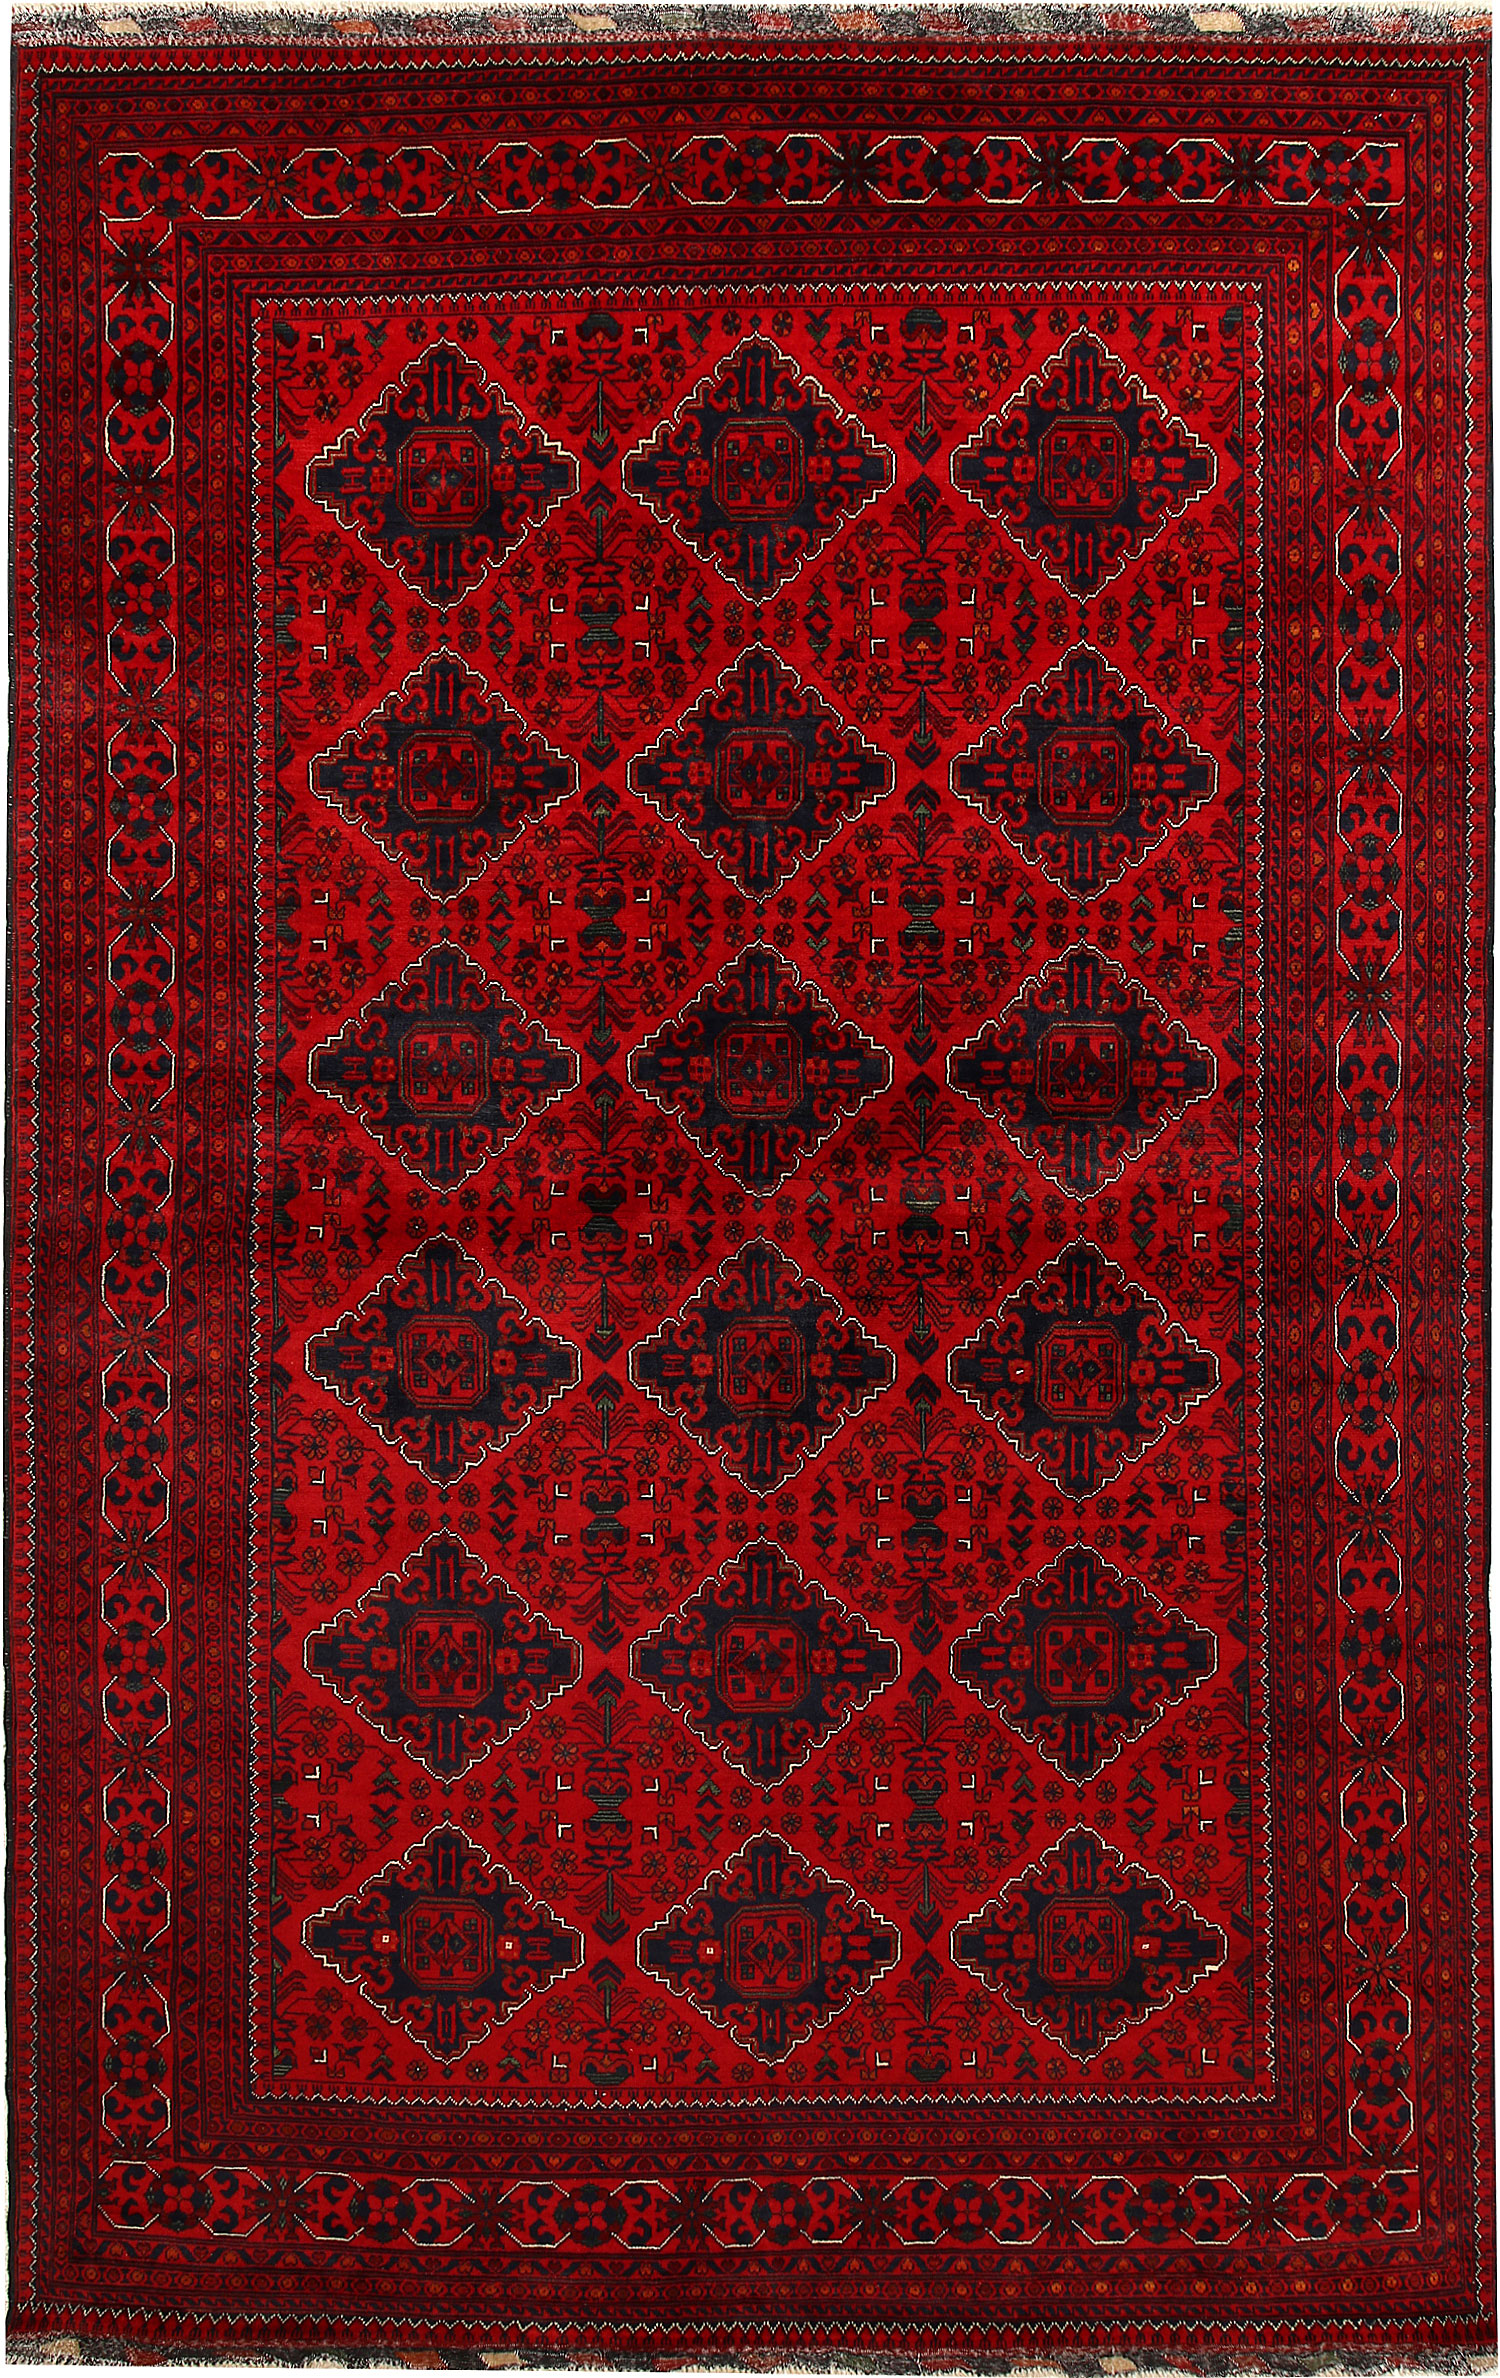 Jade Carpet